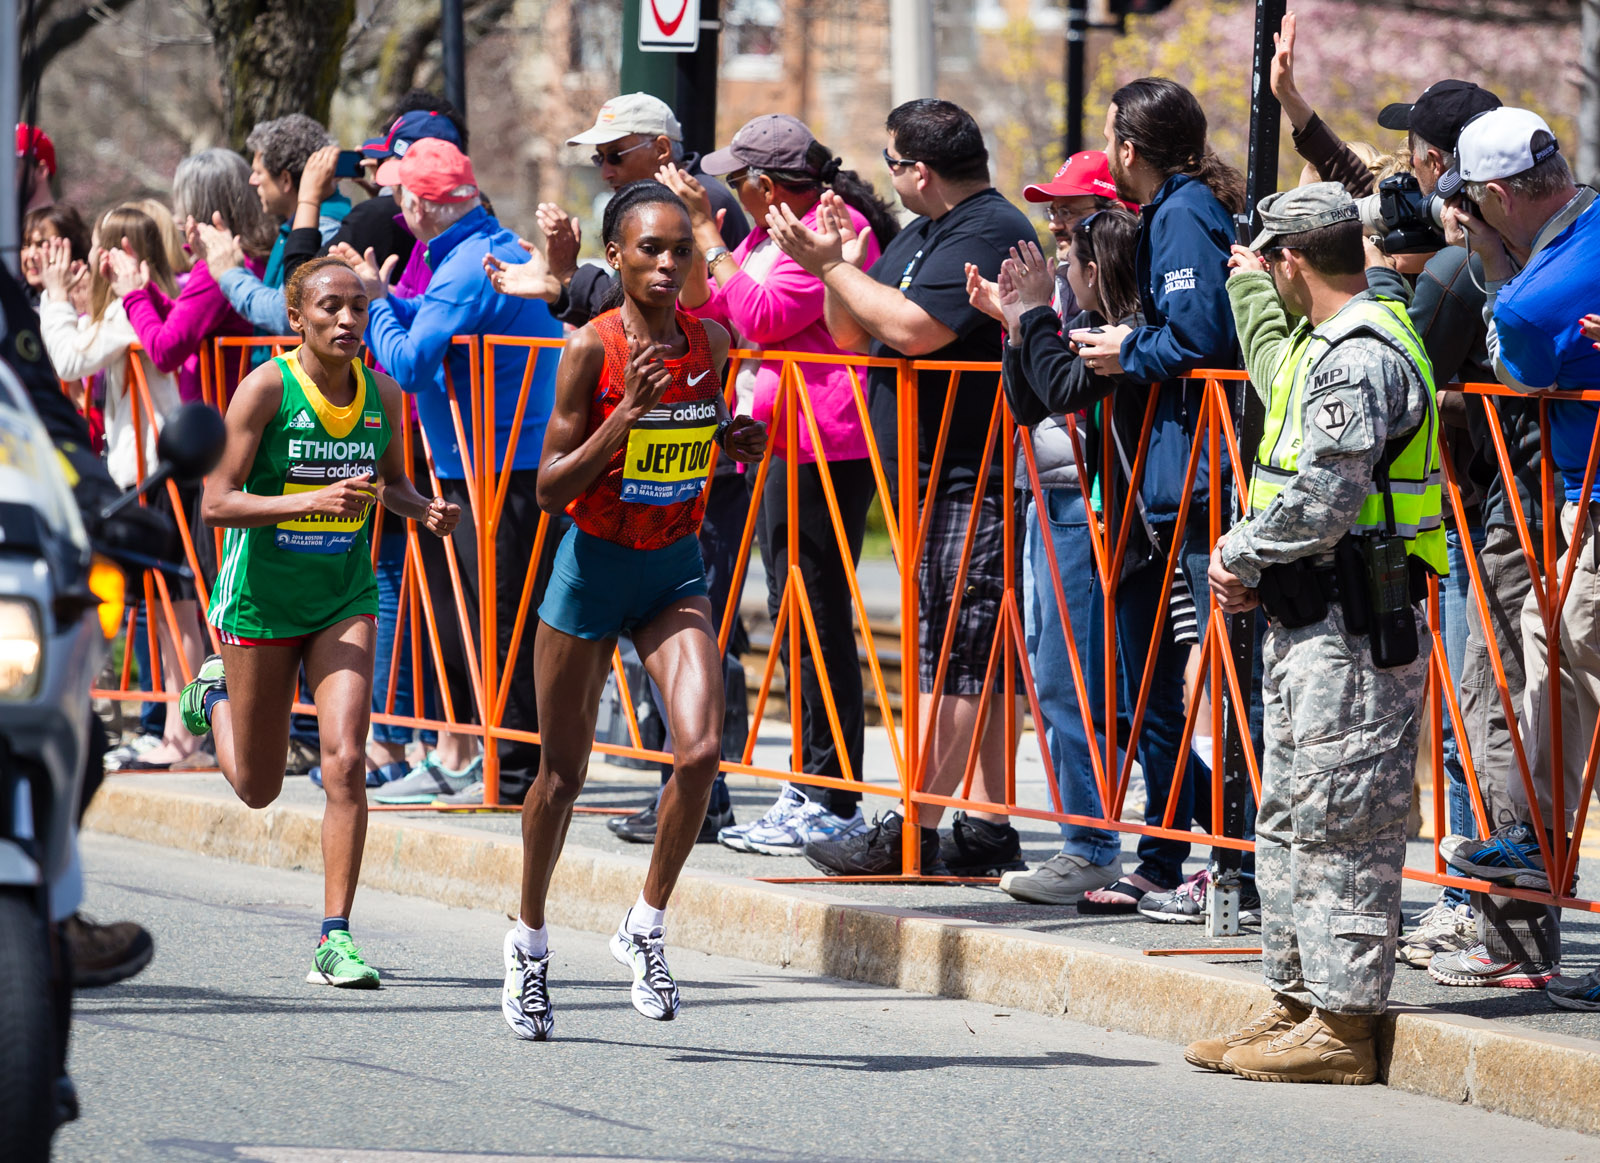 Rita Jeptoo (2014 Boston Marathon)